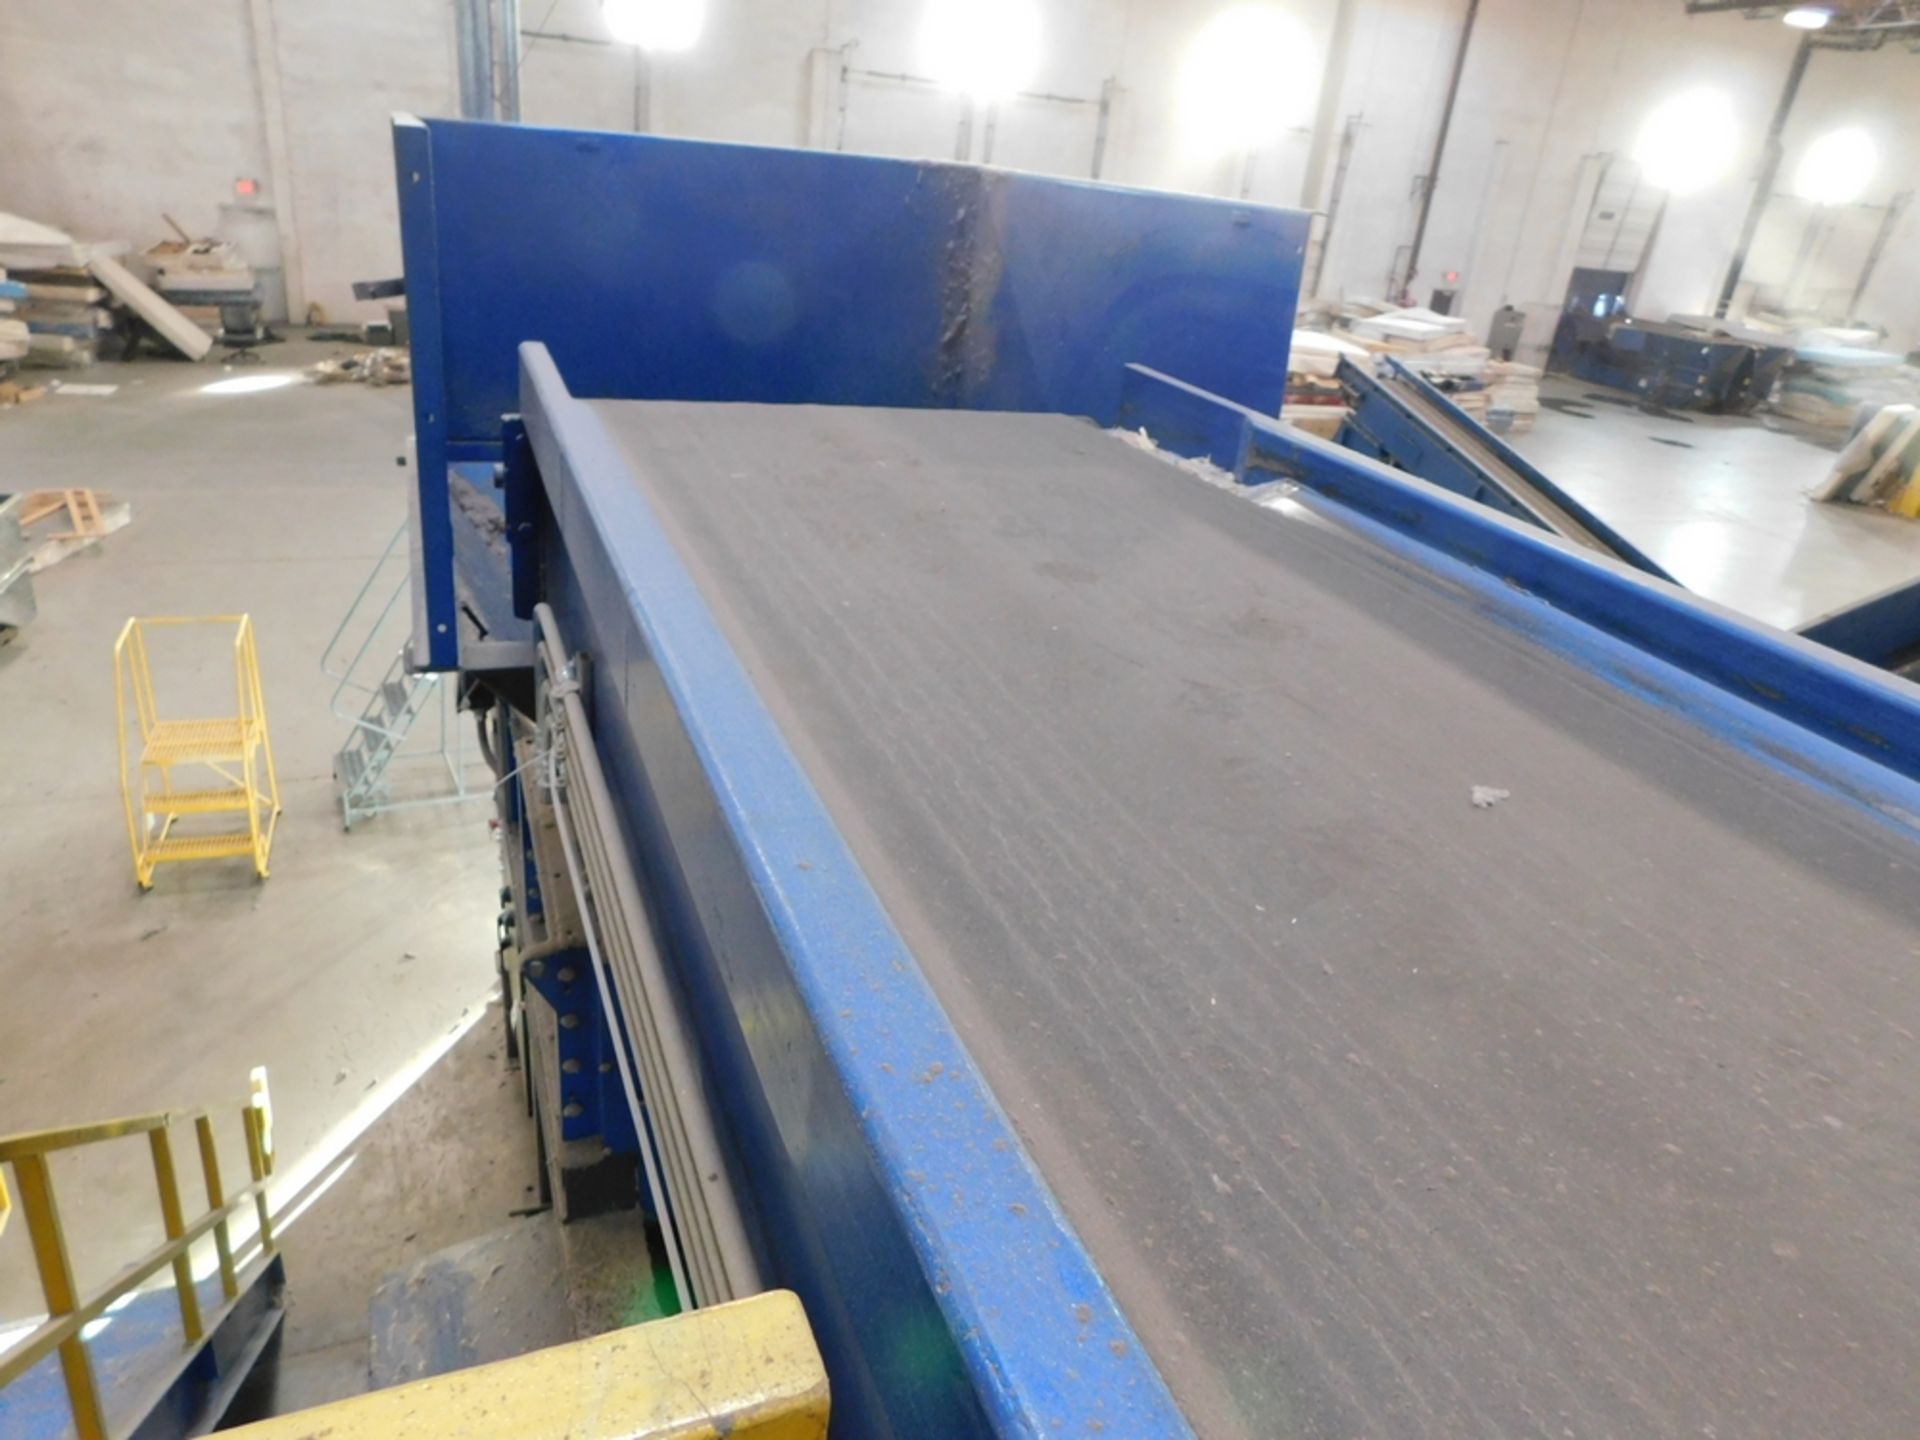 Mayfran 48" x 60' Rubber Belt Conveyor Slider - Image 2 of 4